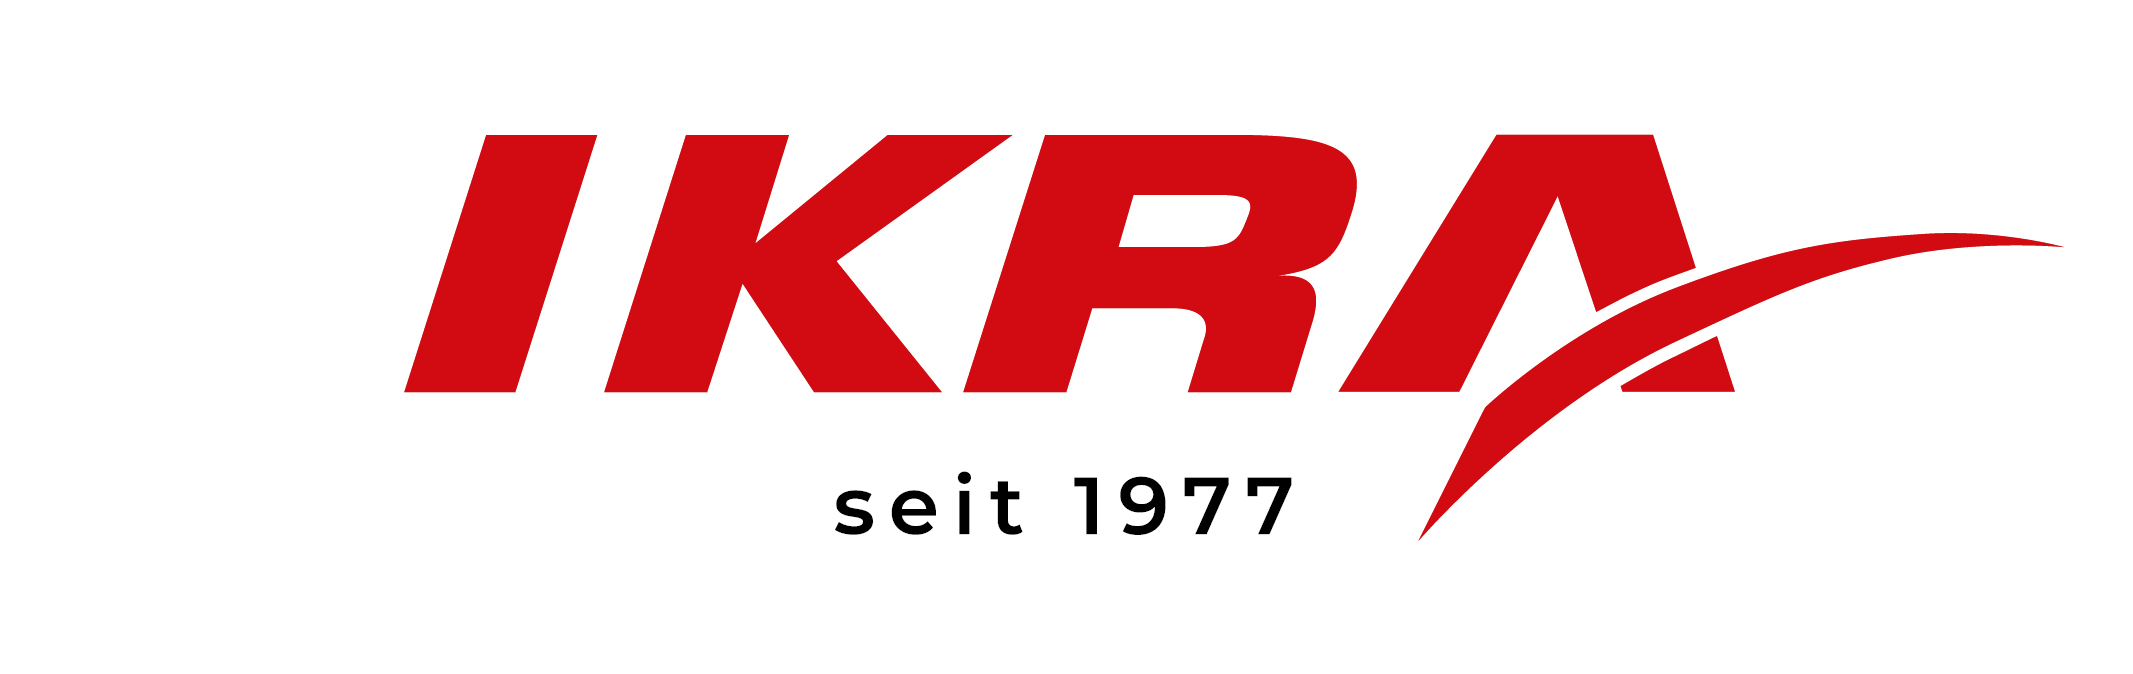 Herstellergarantie IKRA